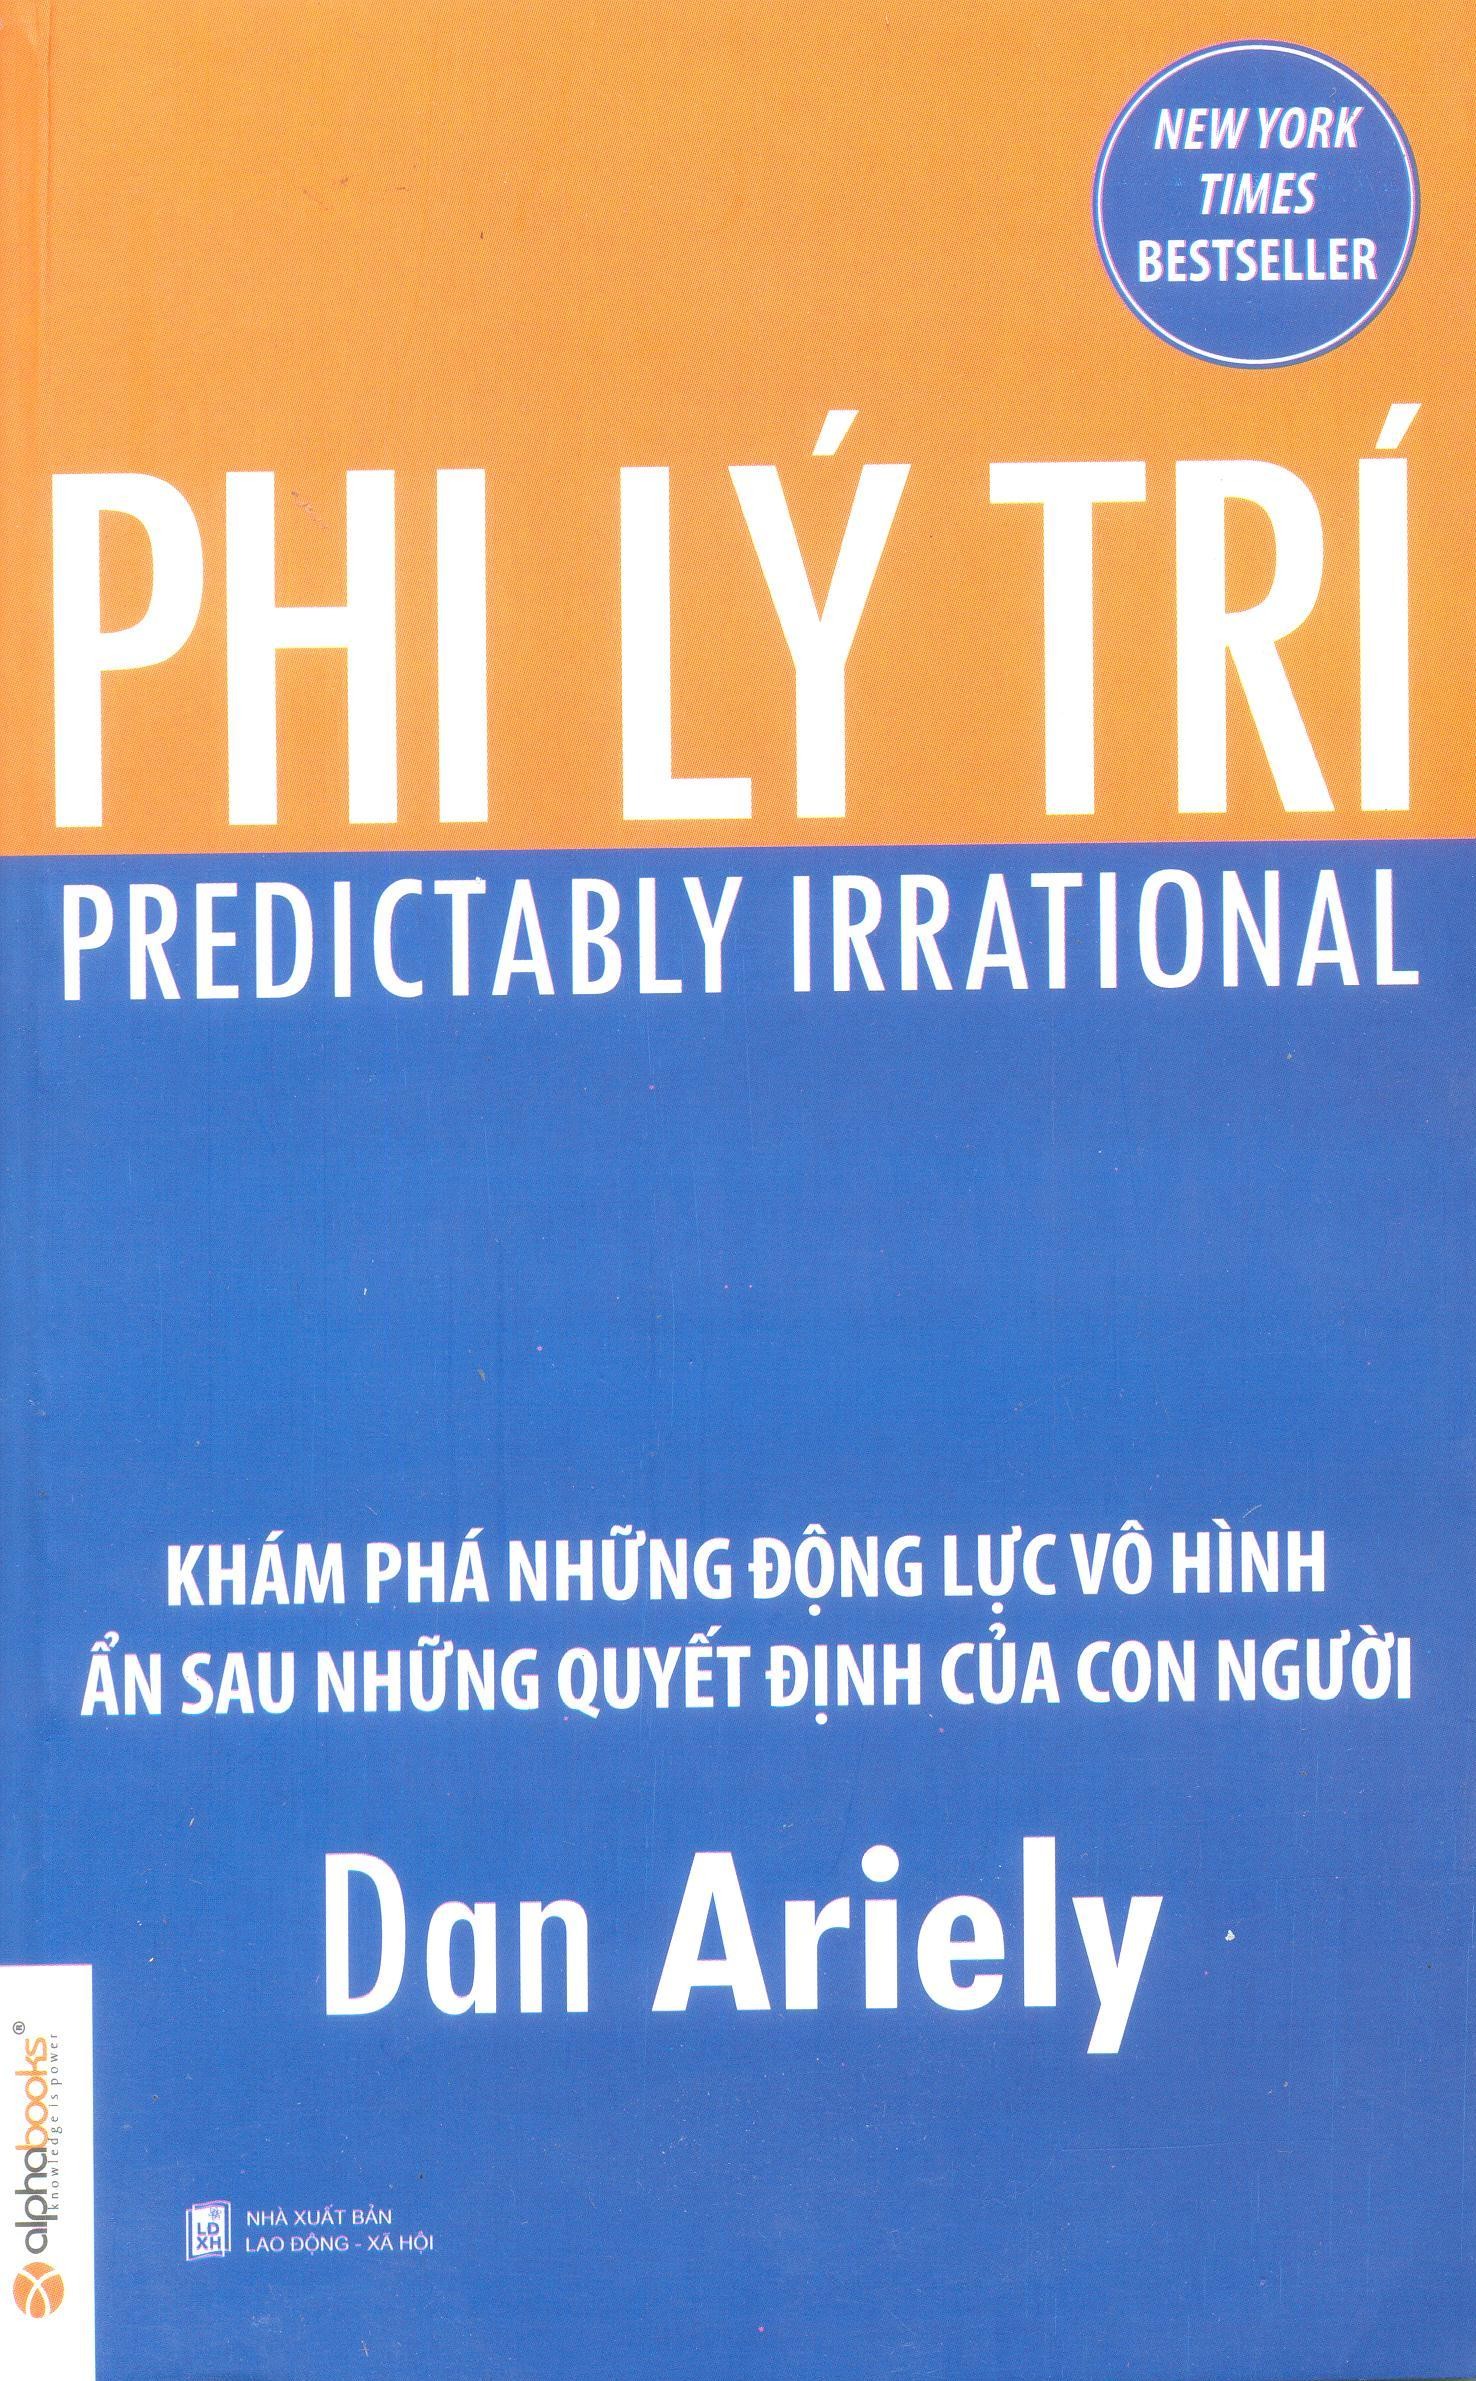 Sách kinh tế kinh doanh "Phi lý trí" - Dan Ariely 